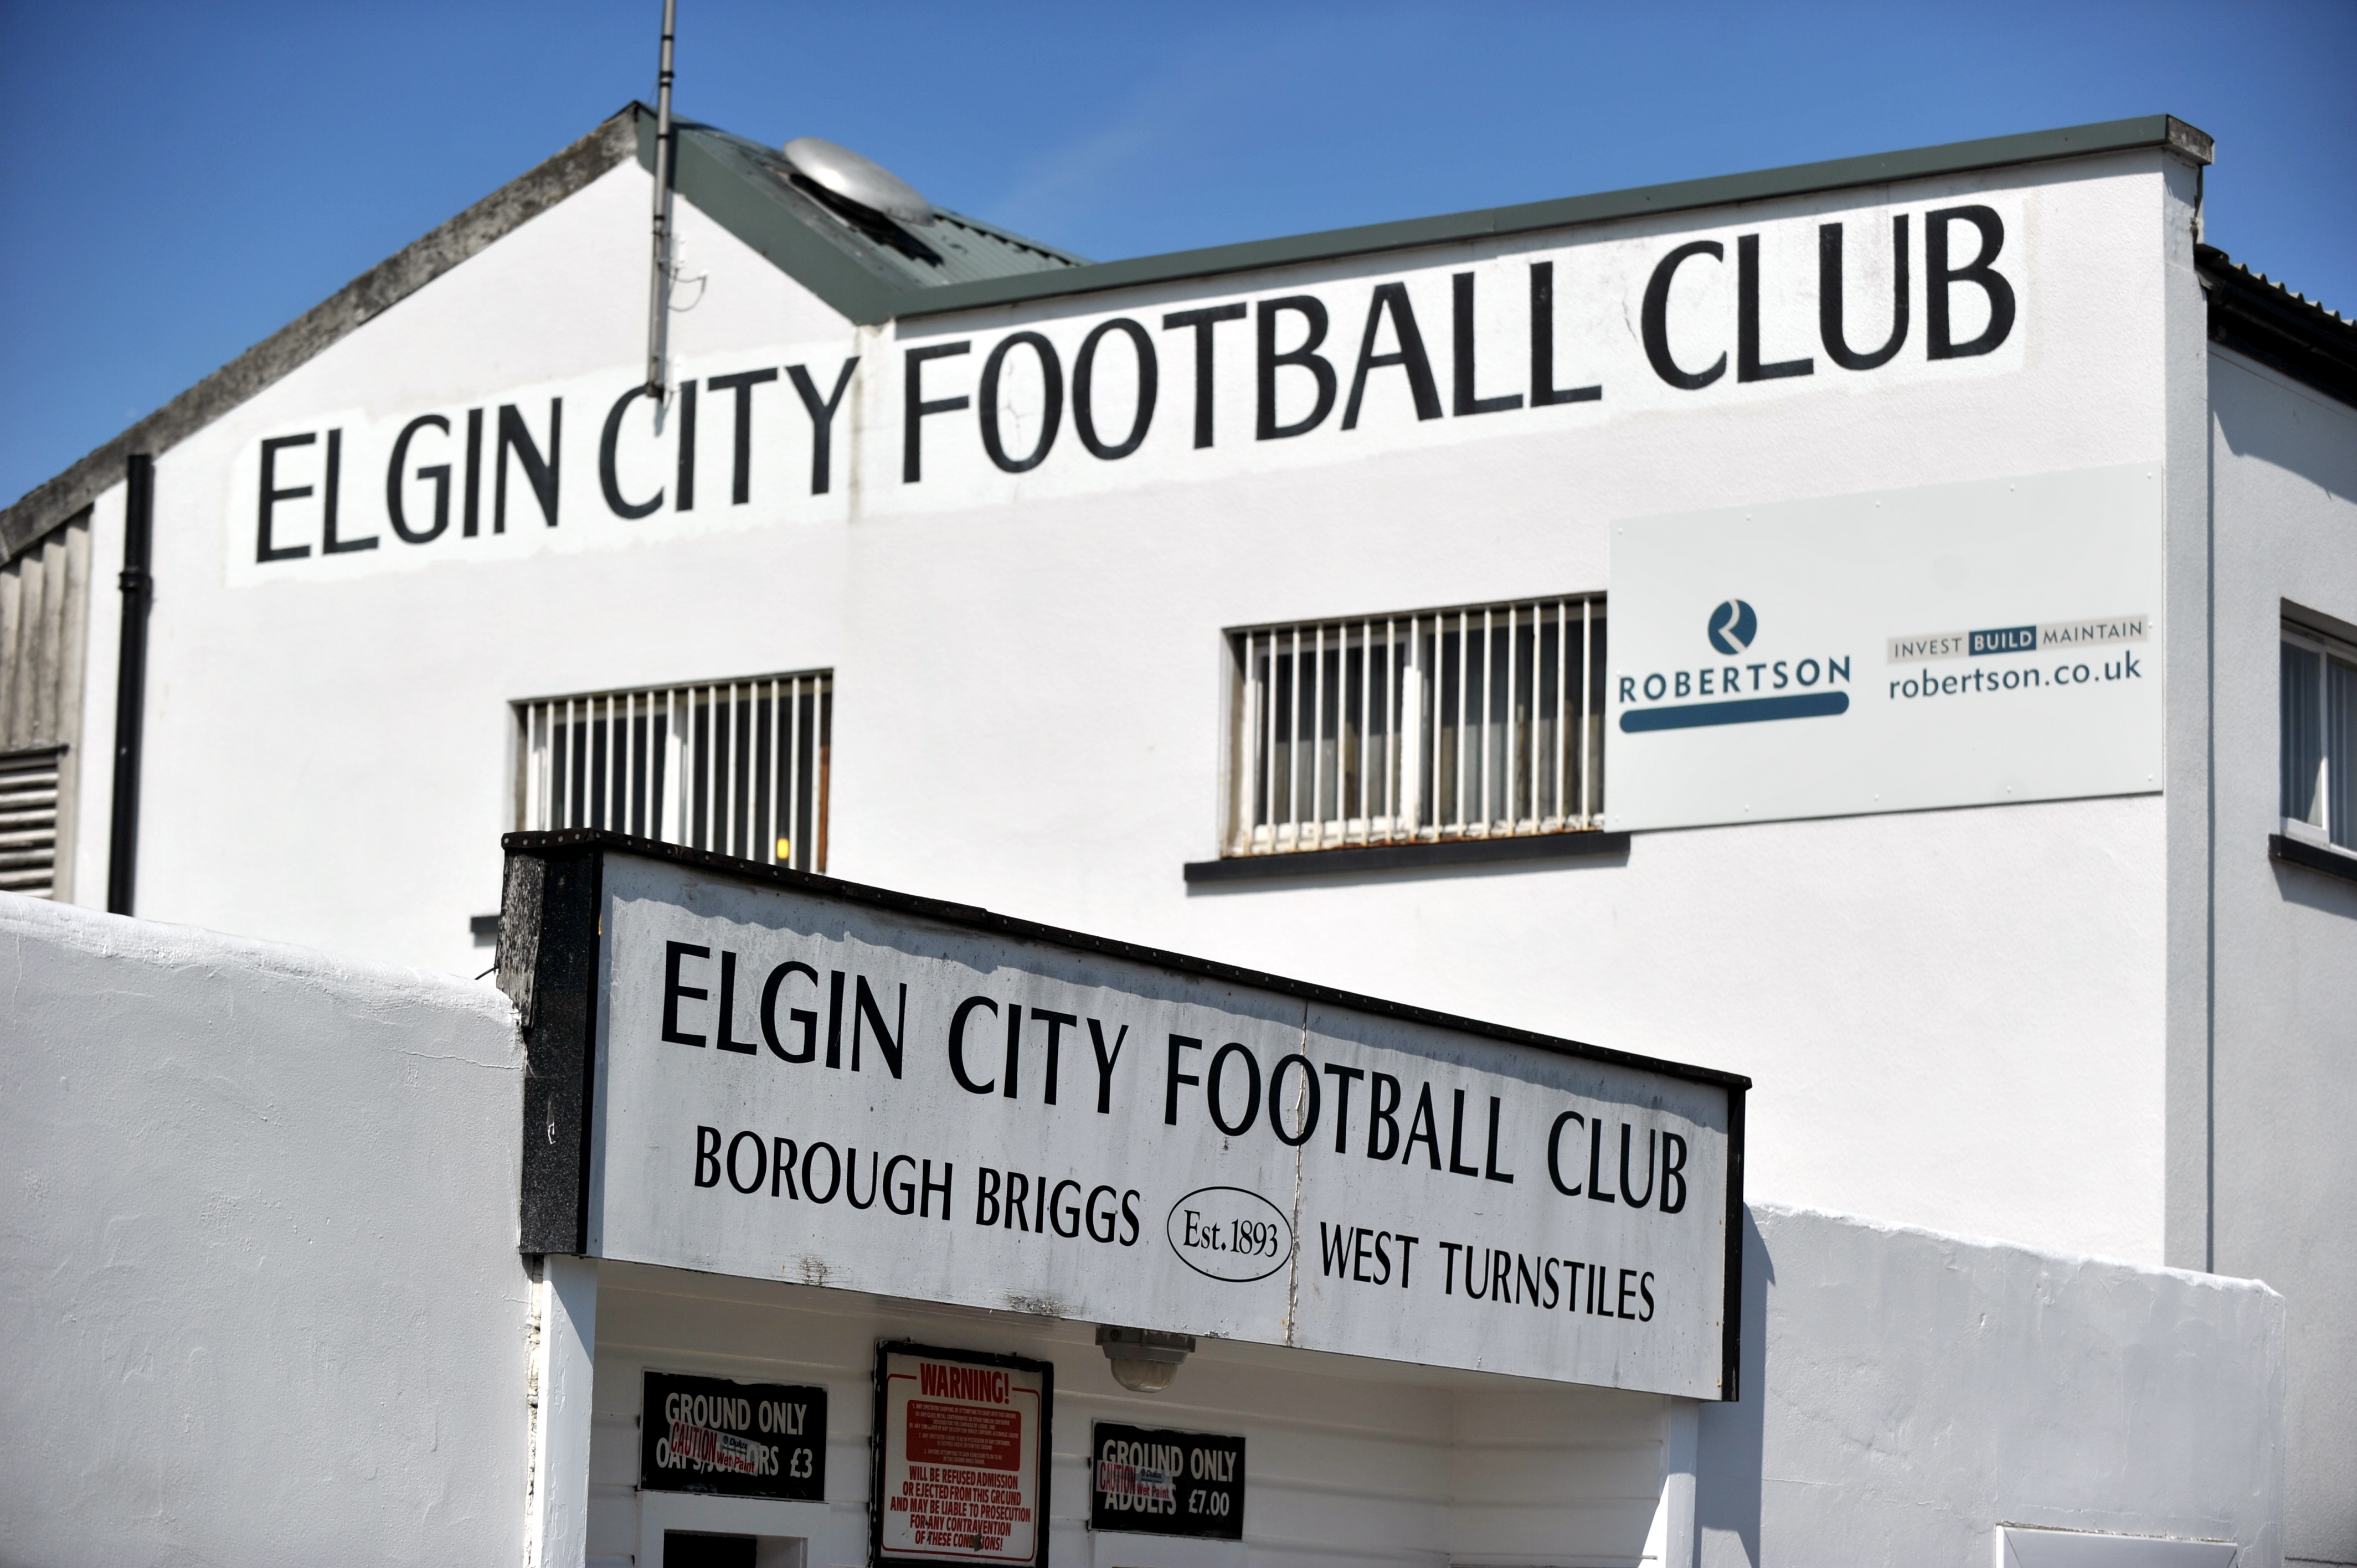 Elgin City's stadium Borough Briggs.